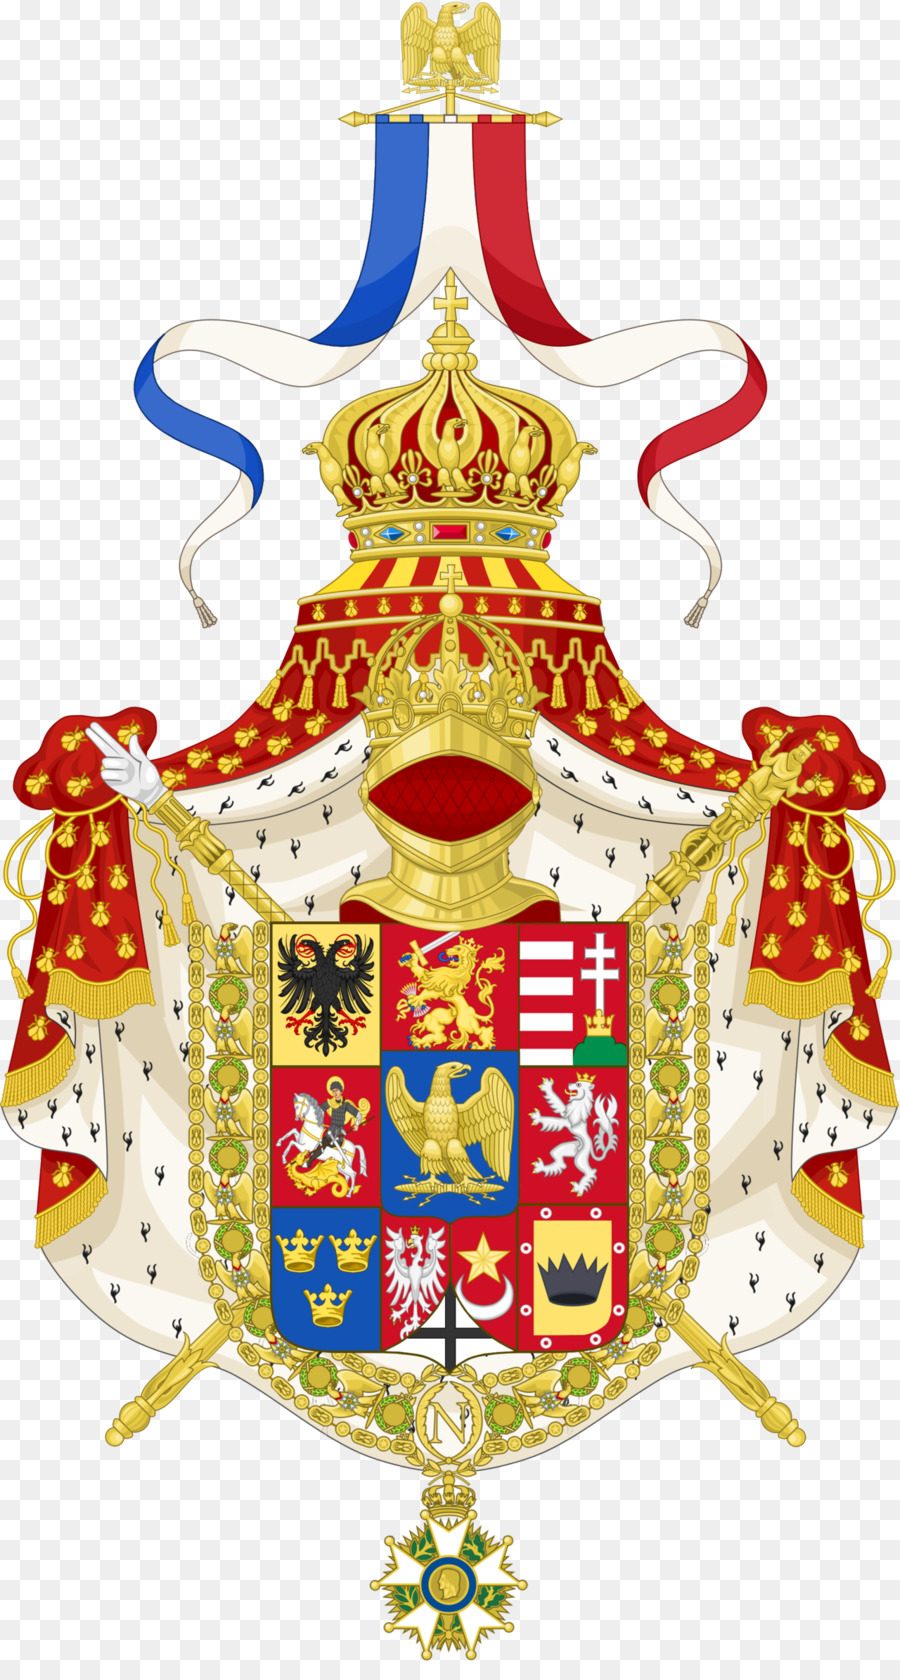 Quốc gia biểu tượng của nước Pháp huy Blasons et armoiries huy hiệu - Pháp